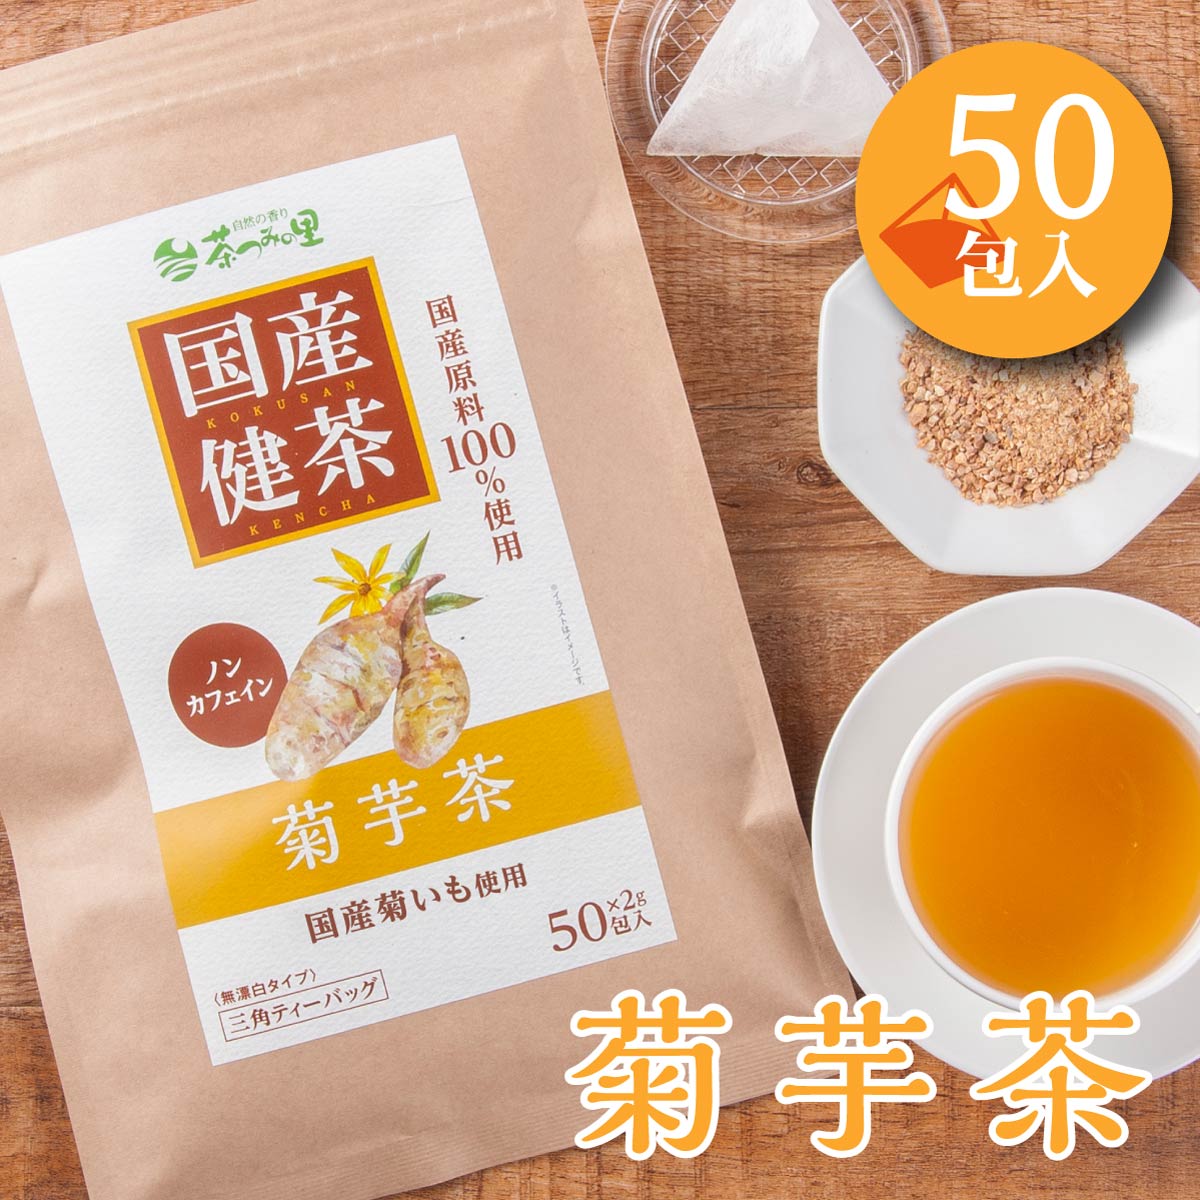 374円 大人気 国産菊芋ごぼう茶 15包